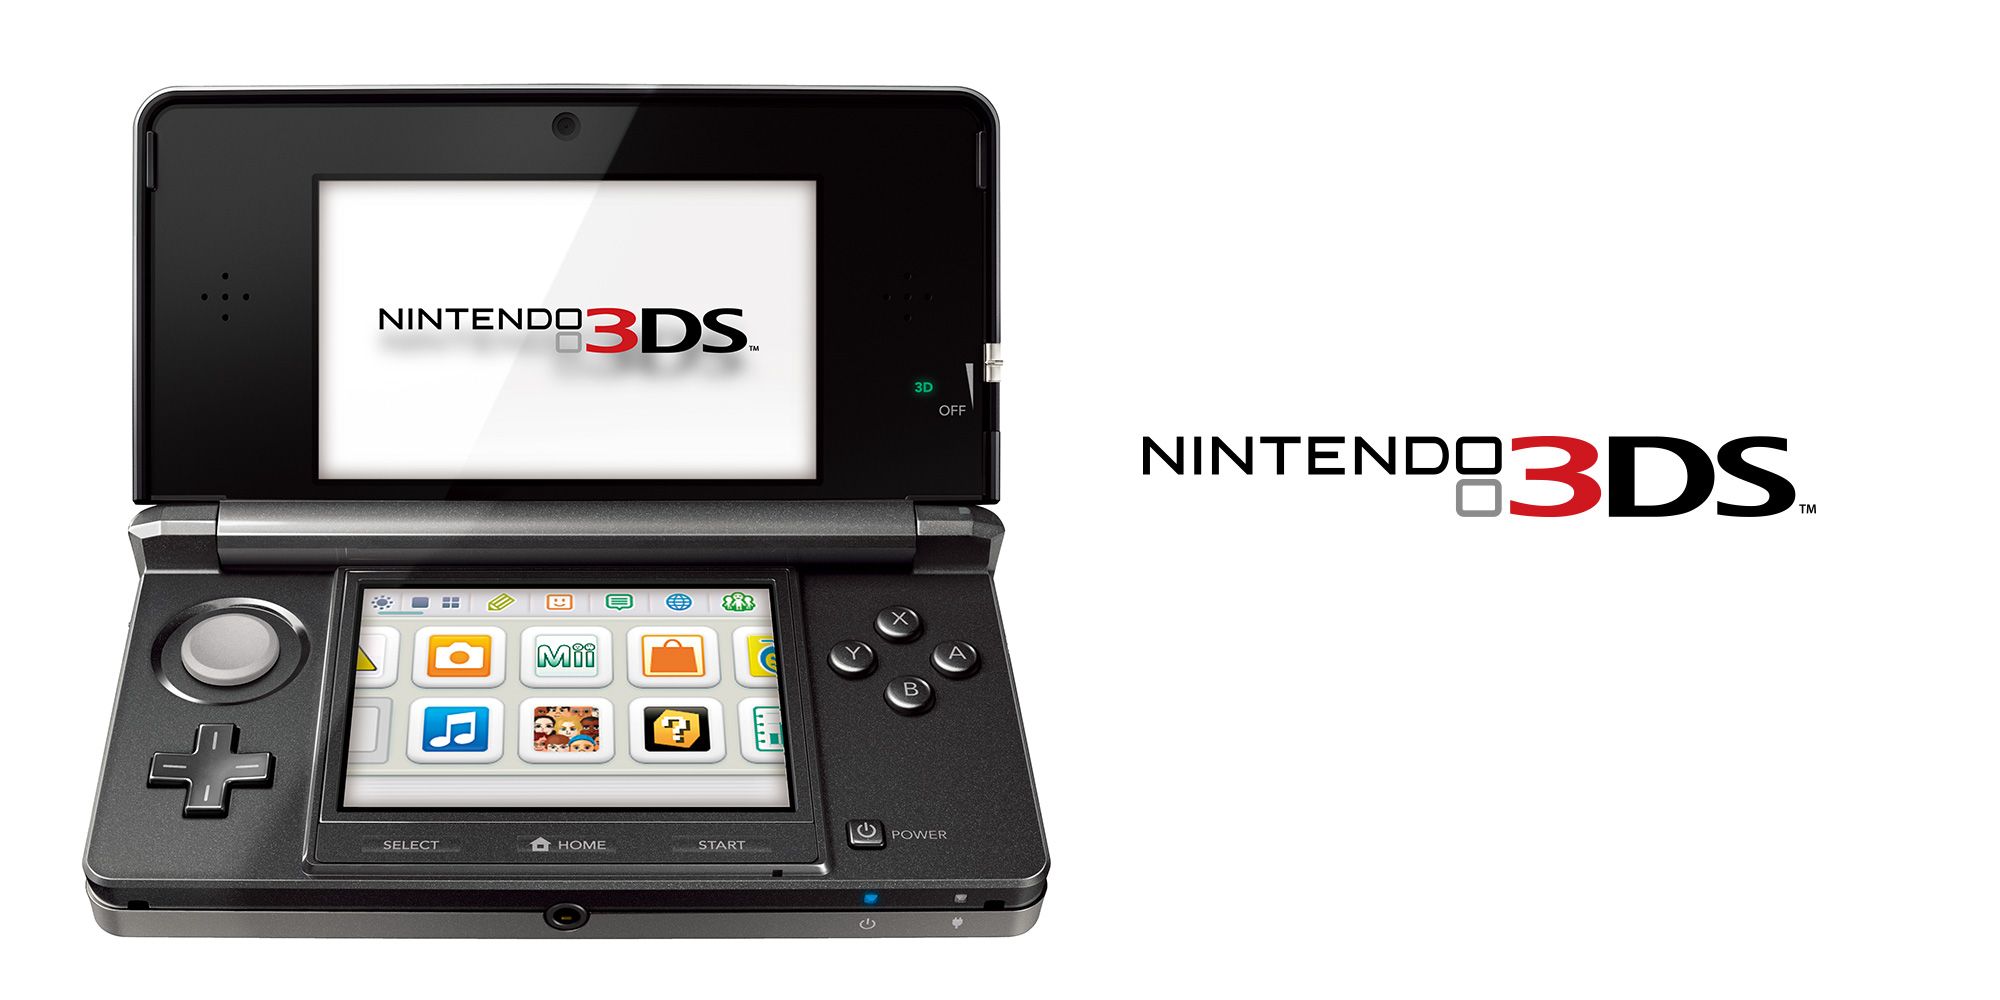 Nintendo 3DS - via Nintendo